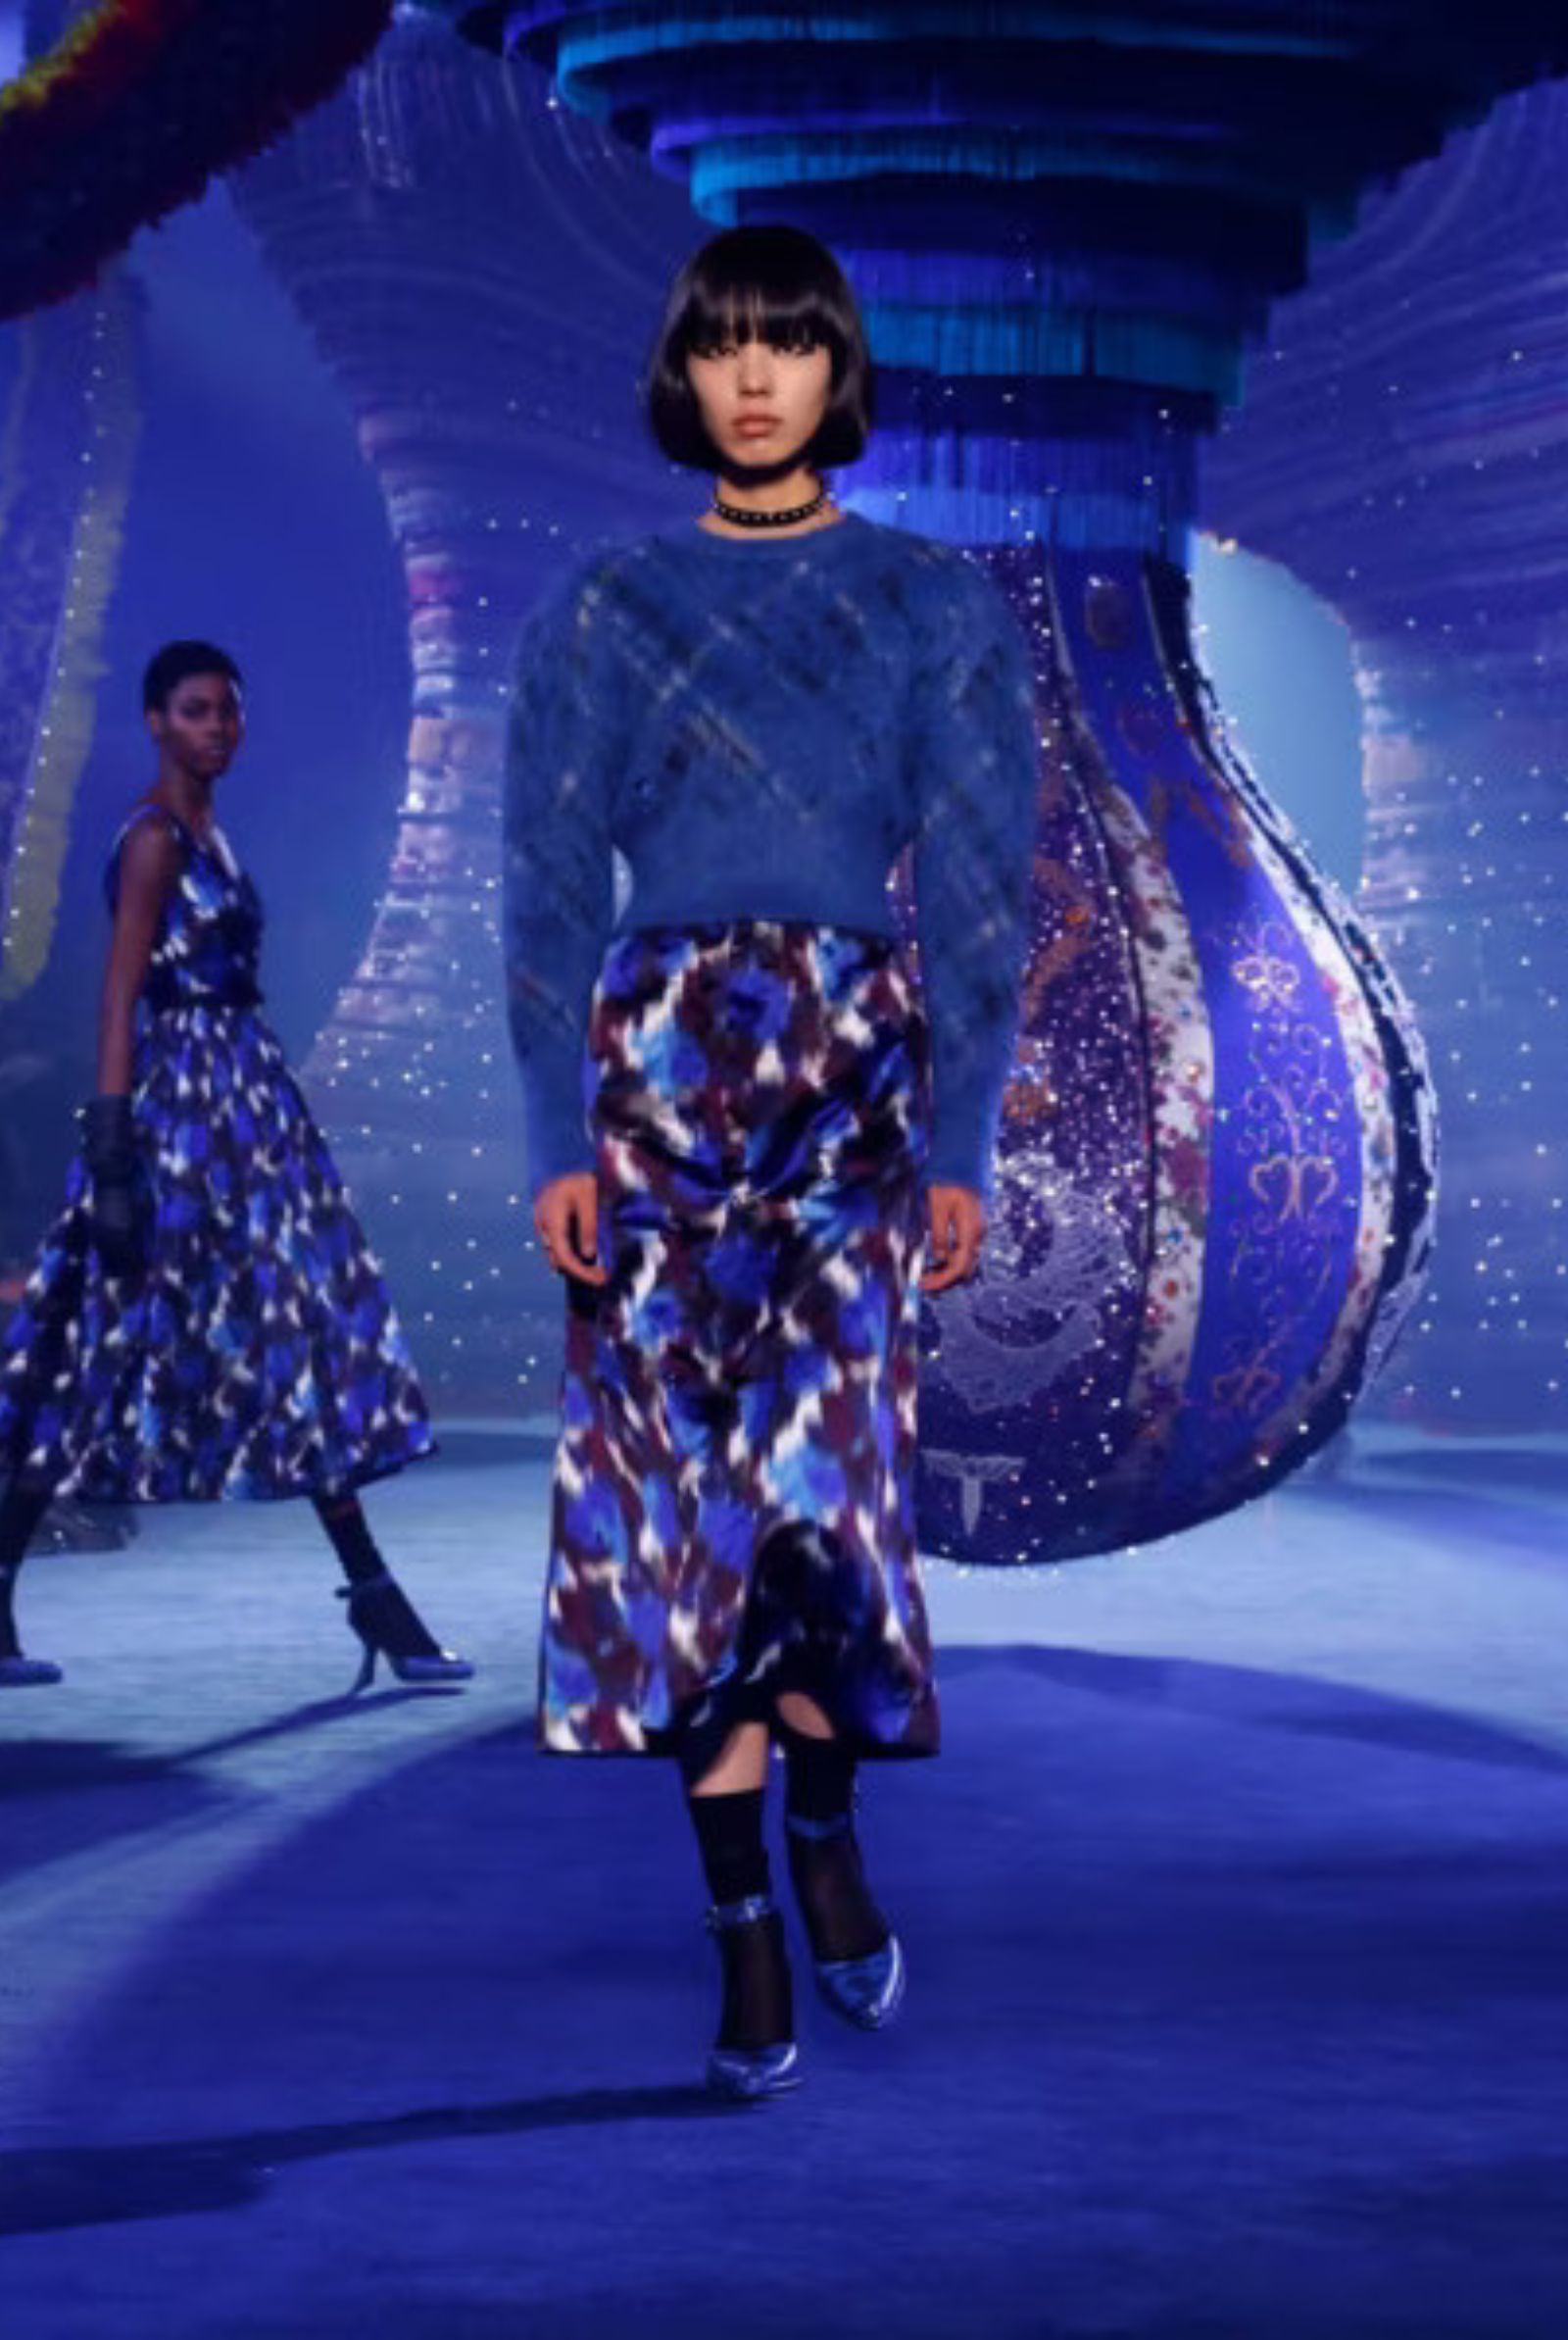 Dior Winter Autumn Womenswear Collection by Creative Director Maria Grazia Chiuri